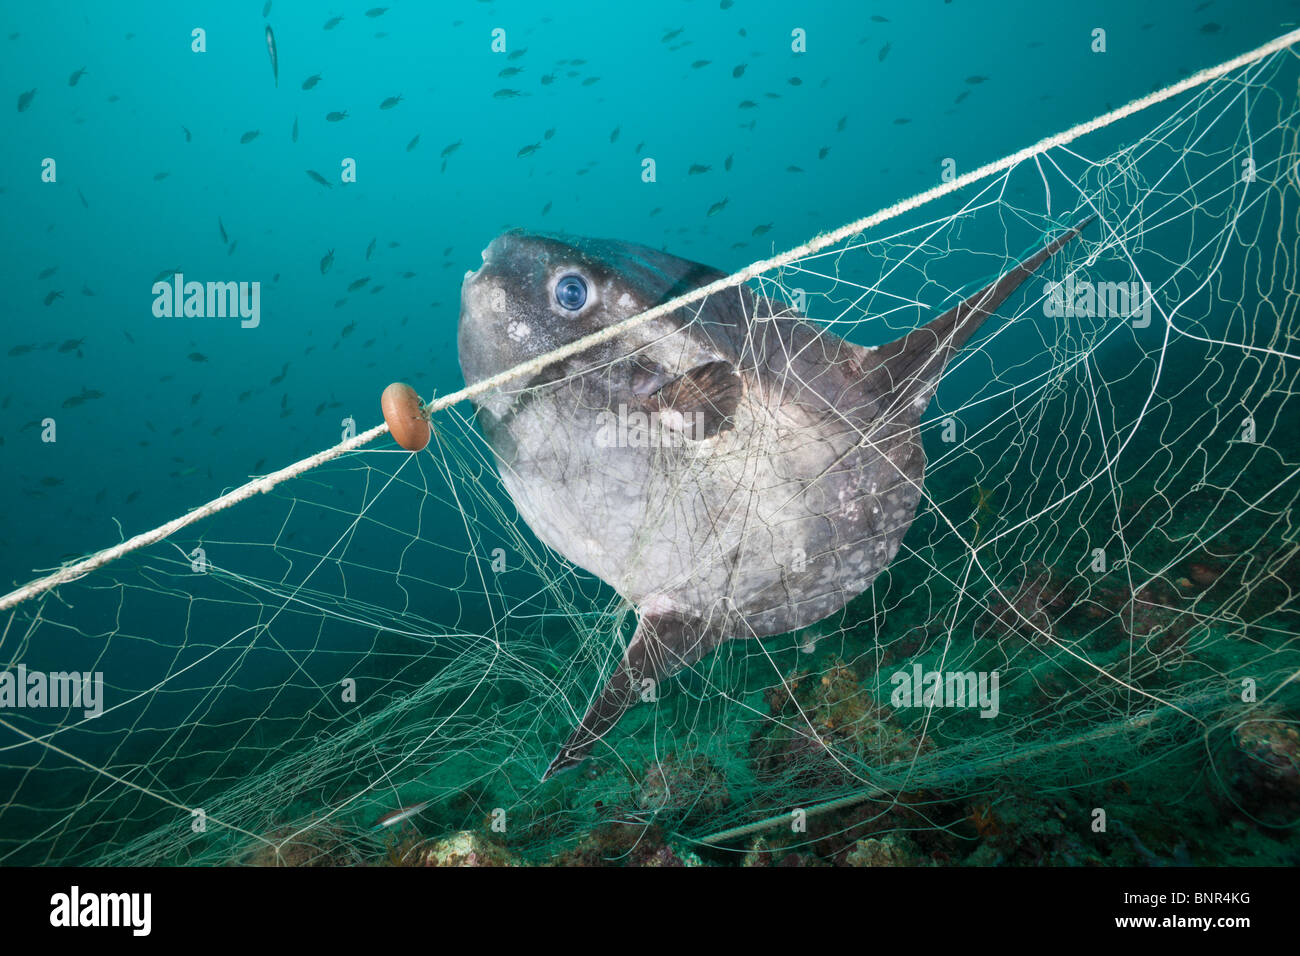 Sunfish trapped in lost Fishing Net, Mola mola, Cap de Creus, Costa Brava, Spain Stock Photo